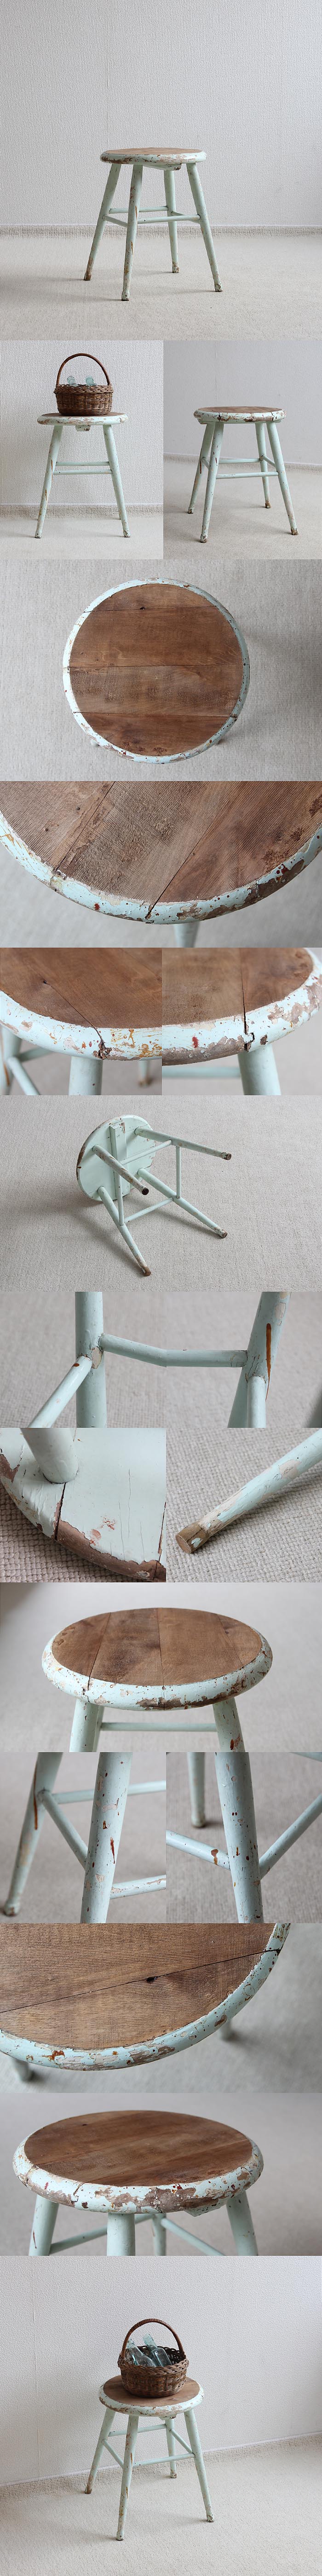 イギリス アンティーク ペイントスツール 木製 丸椅子 古木 英国 家具